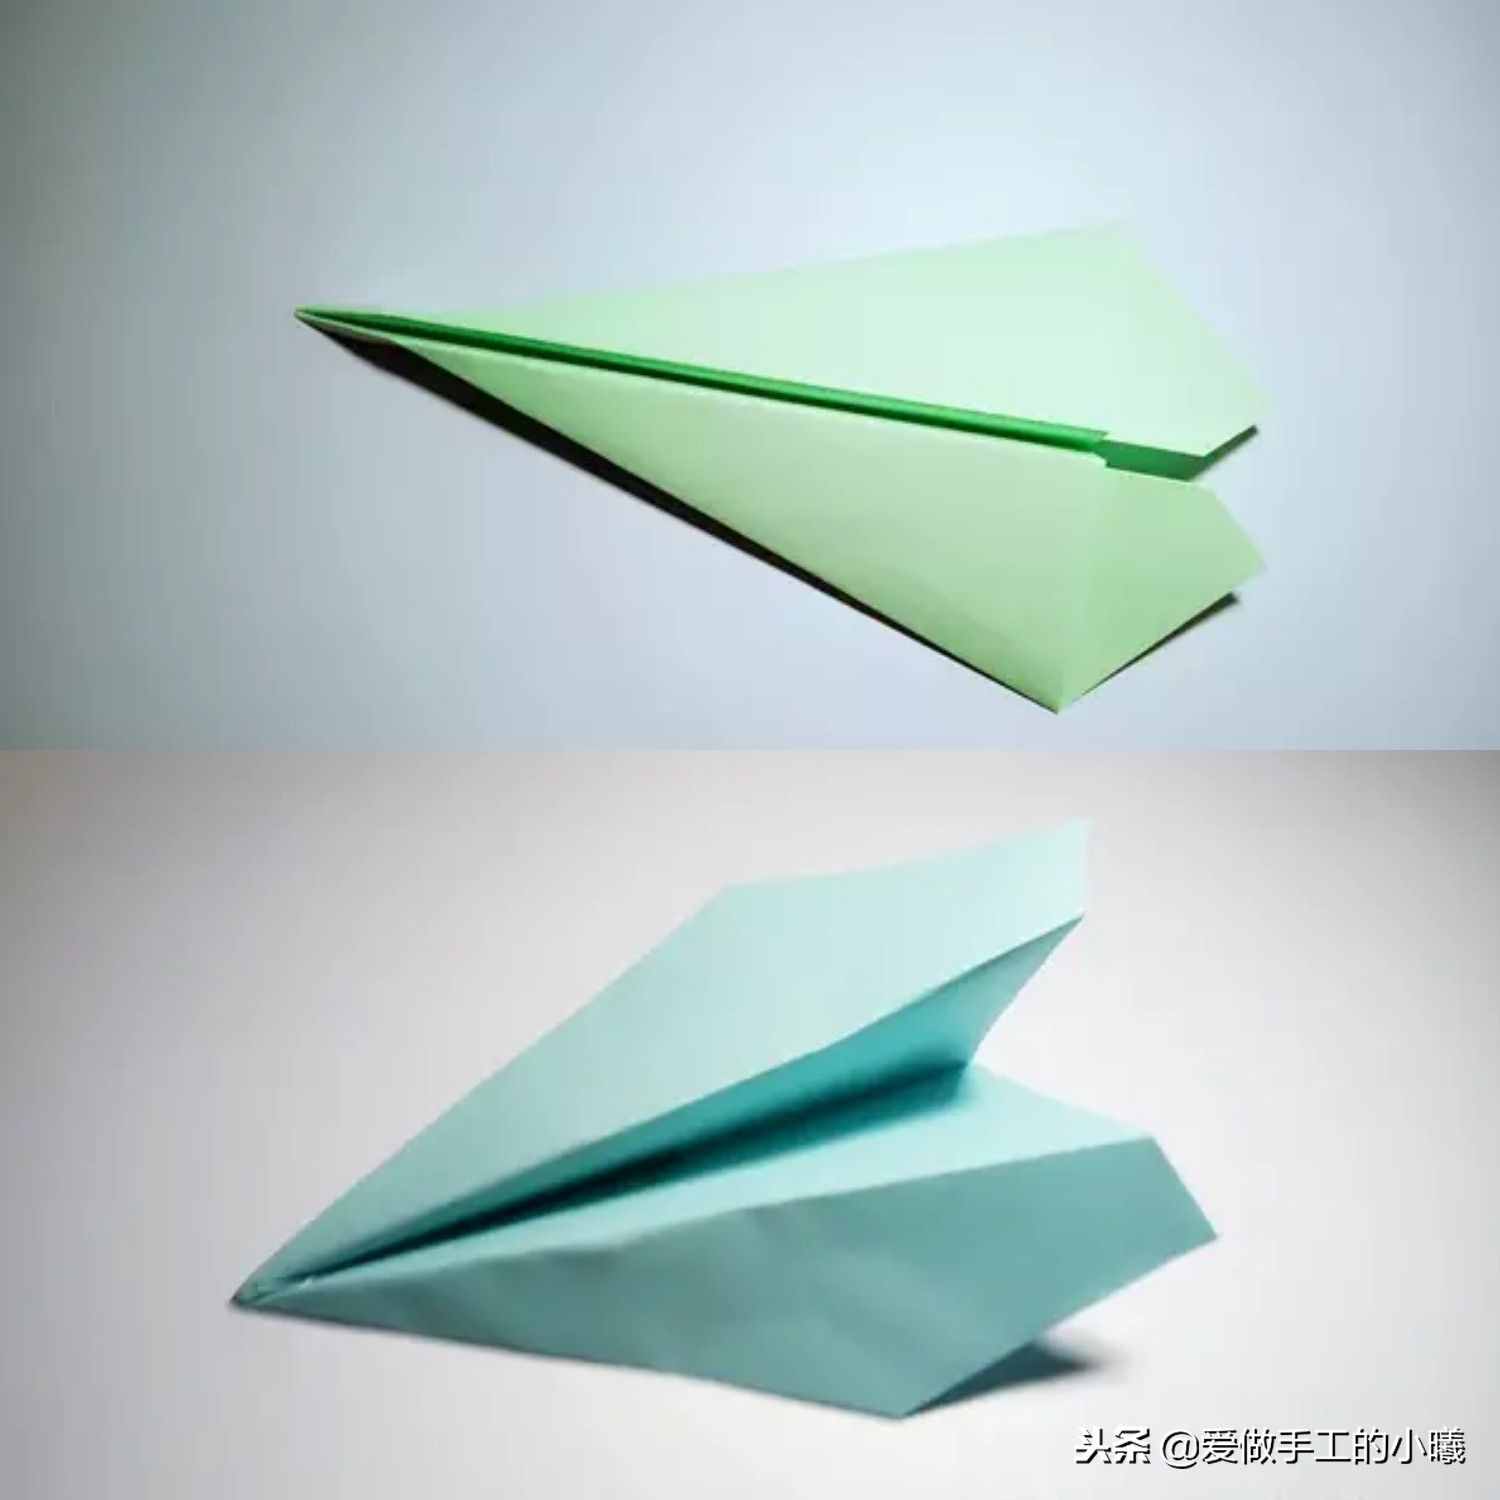 [纸飞机聊天软件使用教程]纸飞机在国内用什么加速器